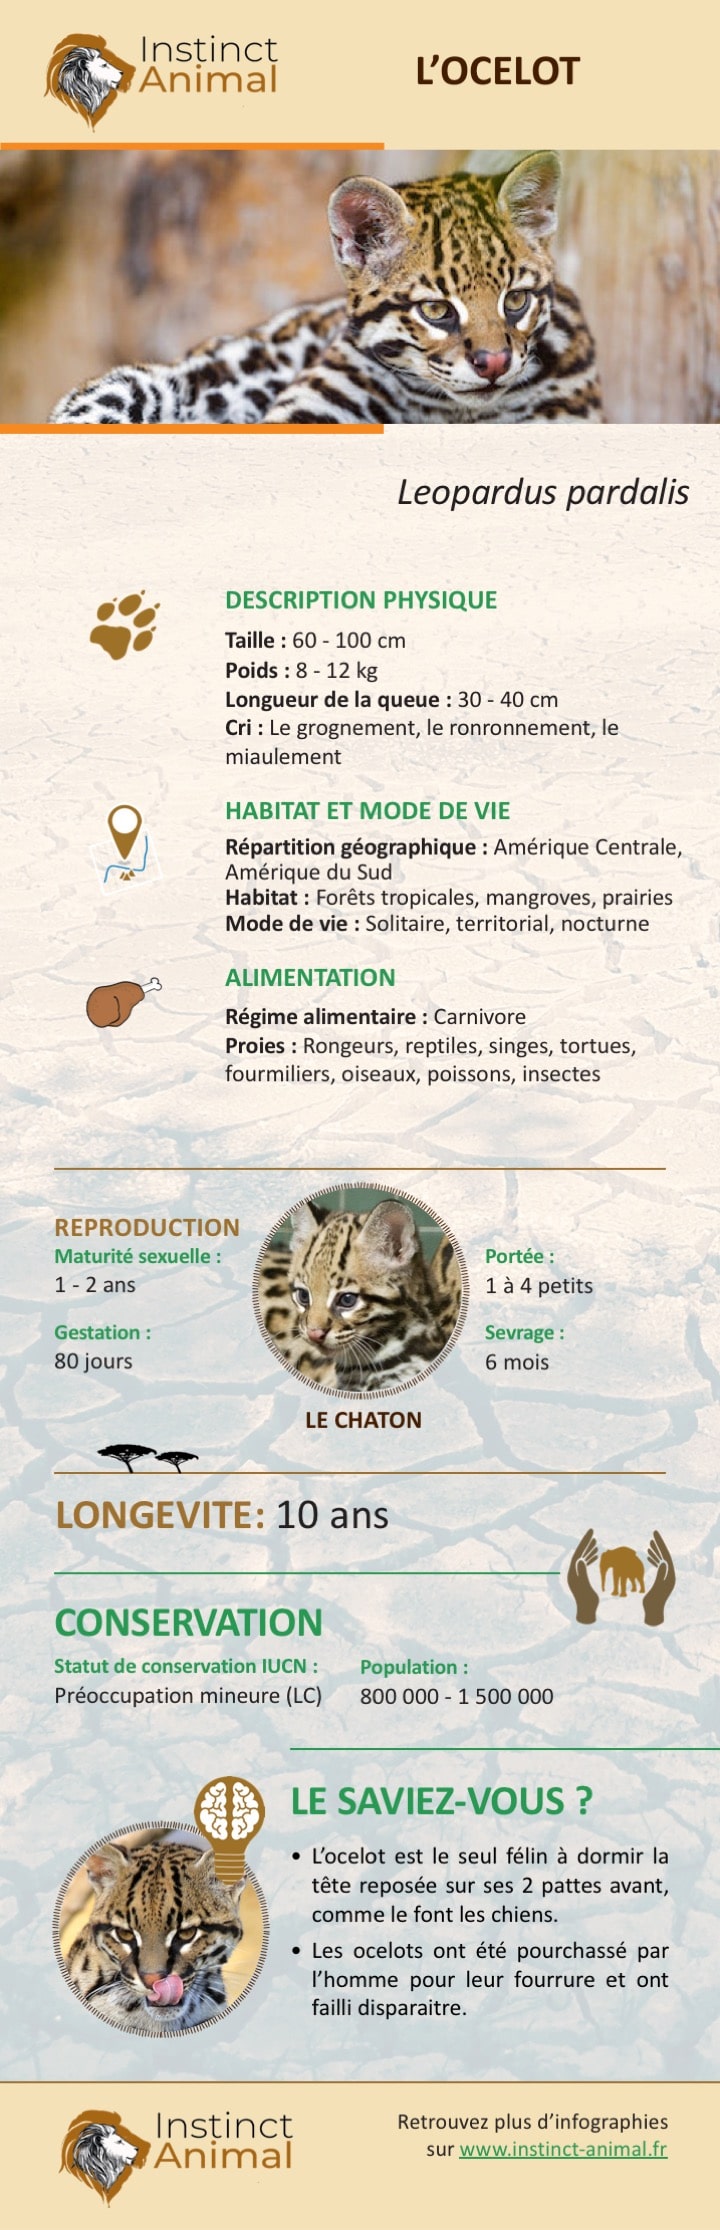 Description de l'ocelot - Infographie - Instinct Animal